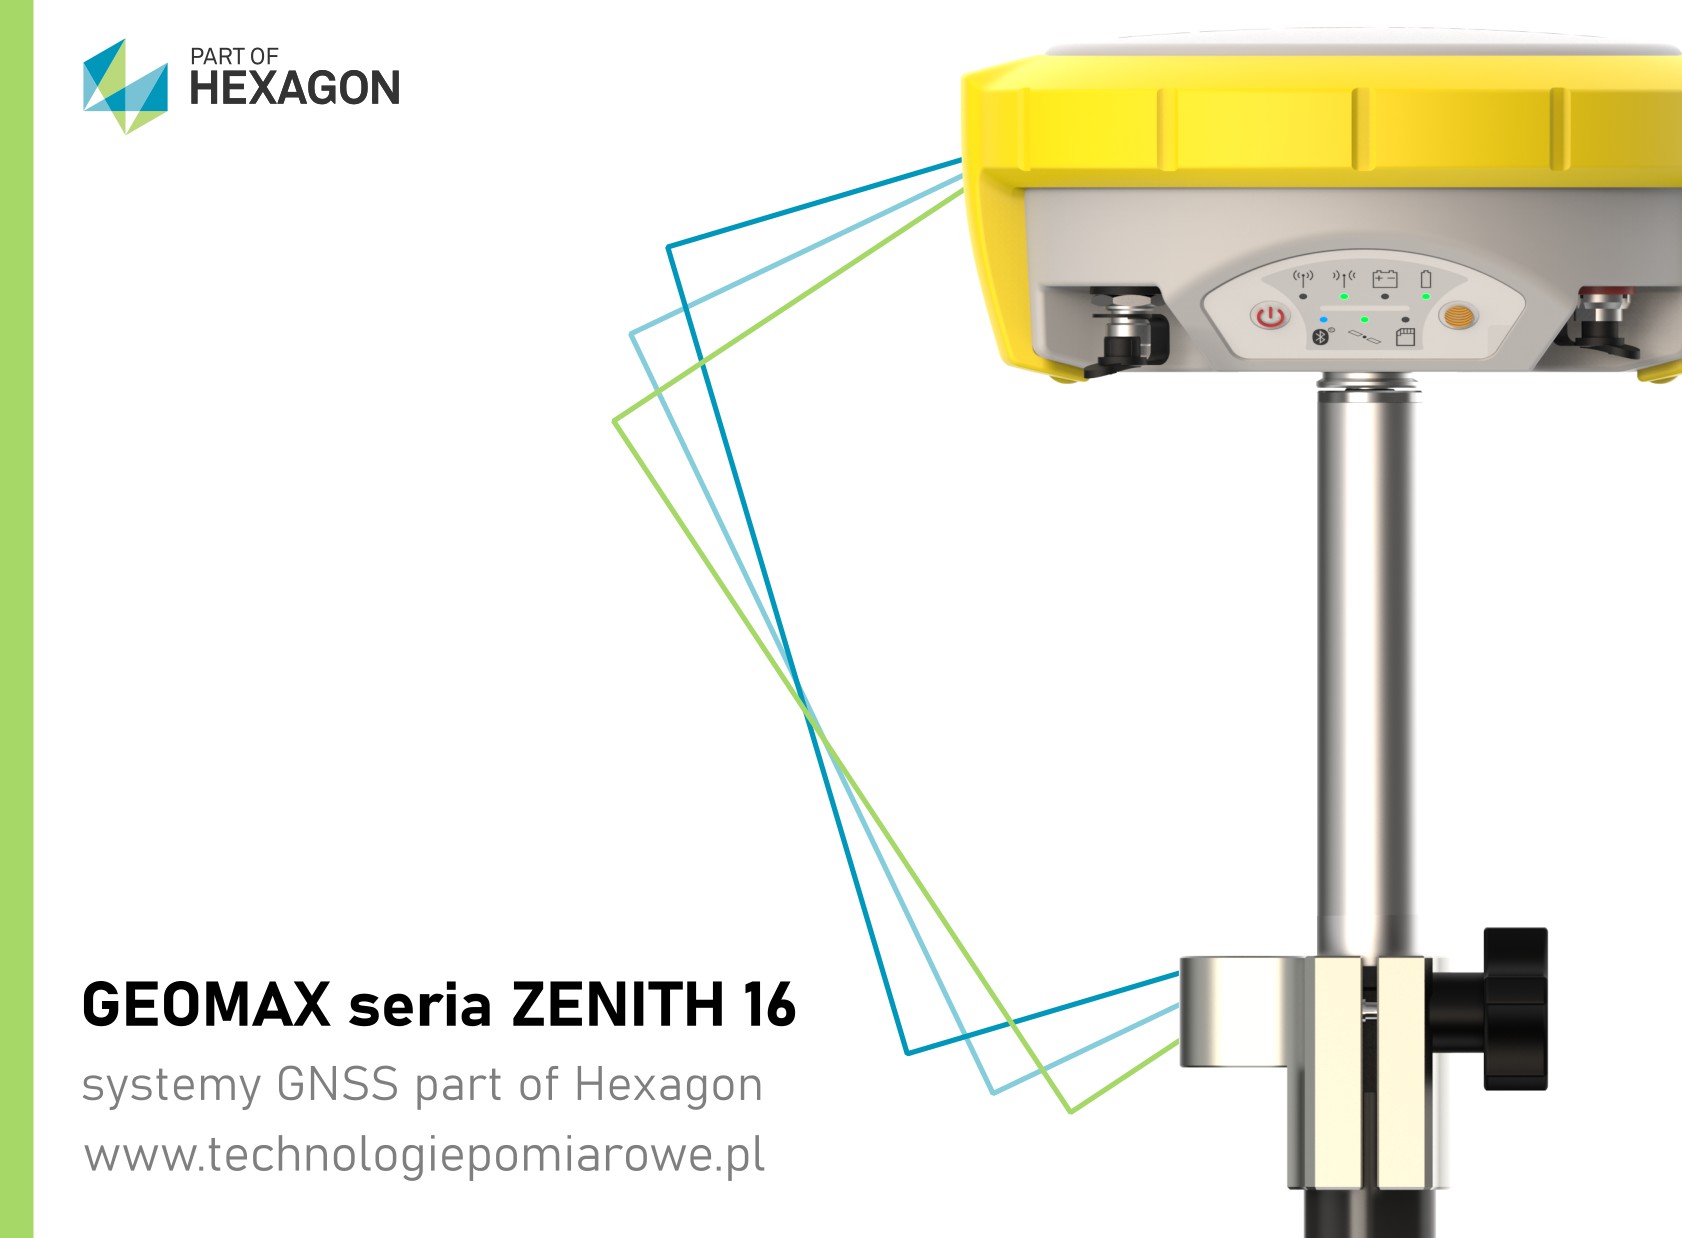 Geodezyjny odbiornik GNSS RTK RTN szwajcarskiej marki Geomax model Zenith 16; Aktualna cena odbiornik GNSS RTK RTN Geomax model Zenith 16; Geomax odbiorniki GNSS RTK RTN sprawdź ofertę; Zapraszamy promocja Geomax Zenith 35 PRO TAG; cena geomax gps; odbiornik gnss geomax; cena geomax zenith 16; precyzyjny odbiornik RTK GNSS z pomiarem z wychyleniem geomax zenith 35 pro tag; odbiornik RTK z wychyleniem; geomax zenith 16 cena; geomax zenith 16 opinie; odbiornik GNSS z systemem IMU; opinie o geomax gps; cena odbiornik Leica GS; Sprzęt geodezyjny-Odbiorniki GPS; Sklep geodezyjny z profesionalnym sprzętem w tym odbiorniki gps; Używany odbiornik GPS LEICA; zenith 16 cena; trimble r10 sprzedam; ranking gps geodezyjnych; geomax zenith 25 cena; trimble r10 cena; geomax zenith 35 opinie; Odbiornik z wychyleniem model Zenith 35 TAG marki Geomax; Zintegrowany czujnik wychylenia zestaw RTK GNSS; odbiornik ruchomy GNSS RTK; odbiornik GNSS RTL z systemem TILT; Oferta systemów geodezyjnych: odbiornik GNSS RTK marki SOUTH model S82T; Sprawdź aktualne promocja odbiornik gnss rtk SOUTH model S82T; Aktualna cena odbiornik GNSS RTK RTN SOUTH model S82T; Komis sprzętu geodezyjnego oferuje odbiornik gnss rtk marki SOUTH model S82T; odbiornik GNSS Kolida; kolida k5 infinity; kolida s680p cena; kolida h3; pentax g6ti; geopryzmat raport gps; gps kolida k5 infinity; kolida ufo; kolida k58+; używany sprzęt geodezyjny; tani zestaw RTK; tani zestaw GNSS; tani odbiornik RTK; tani zestaw odbiornika GNSS; odbiornik SOUTH S82T; sklep geodezyjny odbiorniki RTK GNSS; chiński gps rtk; tani odbiornik gps rtk; ranking gps geodezyjnych; jaki gps dla geodety; ruide gps opinie; zestaw gps rtk; gps ruide; gps w geodezji; gps kolida; odbiornik gnss rtk south galaxy G6 IMU; odbiornik gnss rtk south galaxy g6; odbiornik gnss rtk southg1; odbiornik gnss rtk southg1 plus; odbiornik gnss rtk south s660; odbiornik gnss rtk south s86; odbiornik gnss rtk kolida k5 infinity; odbiornik gnss rtk kolida K9T; odbiornik gnss rtk kolida K1; odbiornik gnss rtk kolida K20; odbiornik gnss rtk kolida K3; odbiornik gnss rtk kolida K5 IMU; odbiornik gnss rtk kolida K5 UFO; odbiornik gnss rtk kolida 680; odbiornik gnss rtk stonex S900; odbiornik gnss rtk stonex S850; odbiornik gnss rtk stonex S700; odbiornik gnss rtk stonex S900; odbiornik gnss rtk ruide; pulsar; odbiornik gnss rtk ruide nova R6; odbiornik gnss rtk ruidemeteor S680; odbiornik gnss rtk ruide r90i; profesjonalne odbiorniki GNSS RTK szwajcarska marka Geomax; odbiorniki serii Geomax Zenith 16; odbiornik geodezyjny; ranking gps geodezyjnych; gps geodezyjny leica; chiński gps geodezyjny; gps geodezyjny dokładność; gps geodezyjny wypożyczalnia; po leasingowy sprzęt geodezyjny; odbiornik gnss; tani odbiornik gps rtk; pełny system GPS GLONASS GALILEO BEIDOU; Ranking GPS geodezyjnych; Leica GS18T cena; Leica GPS; odbiornik GNSS; Leica GS16 cena; Leica GS18T price; GPS geodezyjny Trimble; Tani odbiornik GPS RTK; Używany odbiornik GPS LEICA; zenith 16 cena; trimble r10 sprzedam; ranking gps geodezyjnych; geomax zenith 25 cena; trimble r10 cena; odbiornik GNSS marki Leica; Leica GPS GNSS RTK RTN; zestaw gps Leica; zestaw RTK Leica Geosystems; cena odbiornik Leica; cena odbiornik Leica GS18; odbiornik GNSS Leica; Leica GS18T cena; Ranking GPS geodezyjnych; Odbiornik GNSS cena; Leica GS16 cena; Tani odbiornik GPS RTK; Leica GS18T price; GPS geodezyjny cena; GPS Leica cena; Leica GS18 T; Sprzęt geodezyjny - Odbiorniki GPS; Używany odbiornik GPS LEICA GS15 z kontrolerem CS15; Odbiornik GPS + GLONASS marki Leica model GS15; odbiornik Trimble R12; Trimble R12 cena; Trimble R10 Sprzedam; Trimble R12 price; Trimble R12 eBay; Trimble R12 opinie; Trimble R12 IMU; Trimble R10 cena; Trimble Geodezja; trimble r10 sprzedam